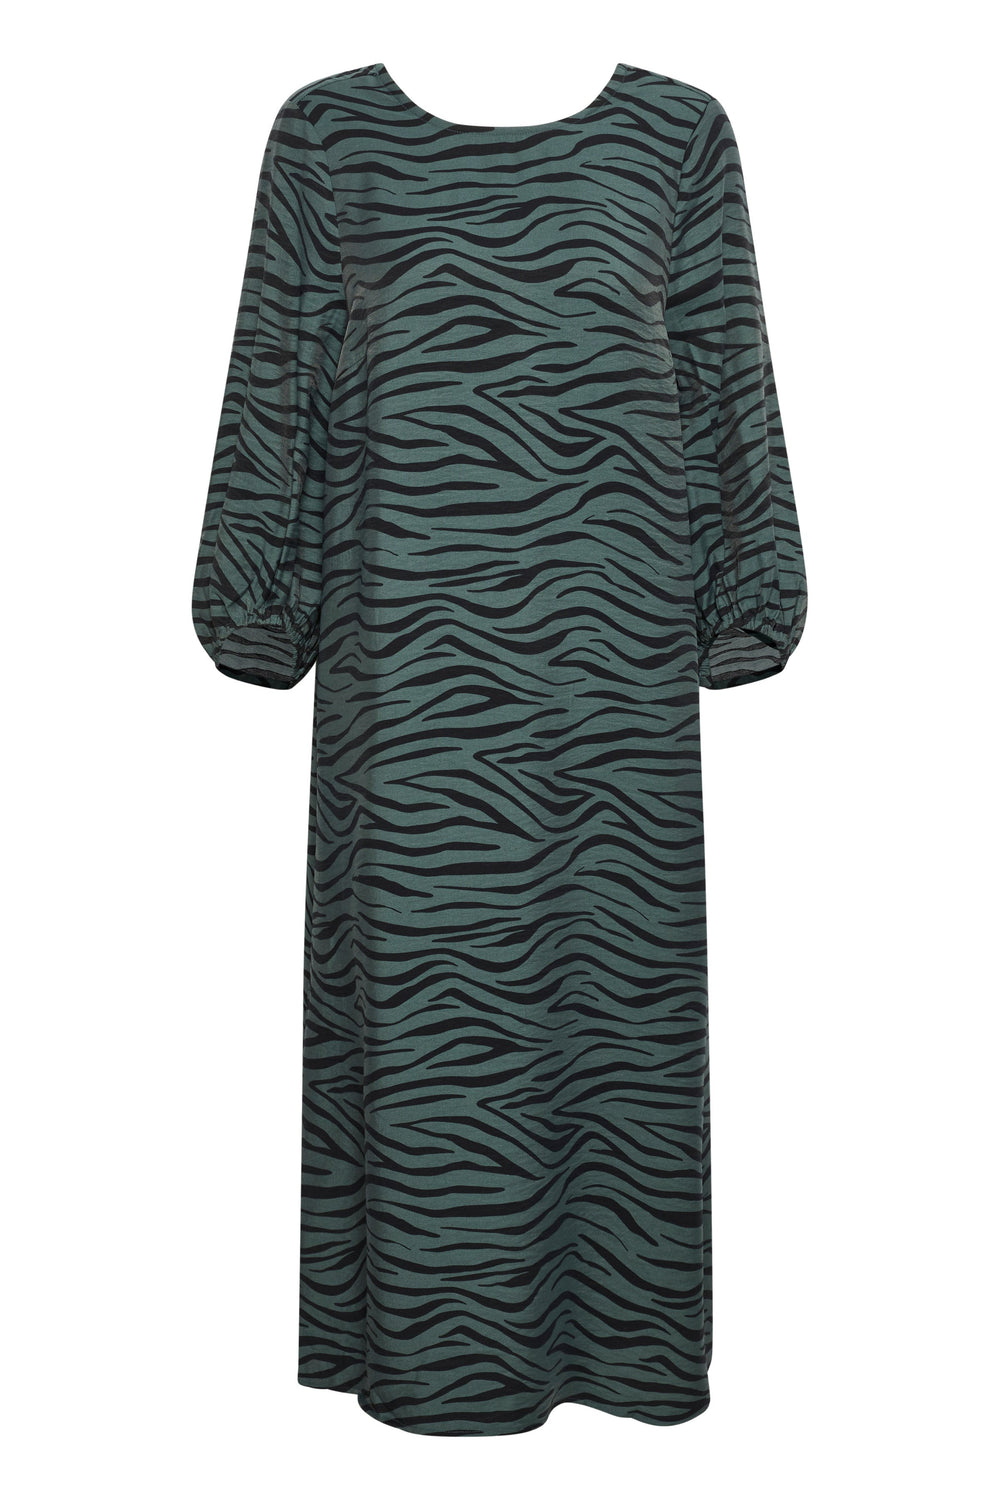 SLCHAMIRA Dark Forest Kleid mit Zebradruck